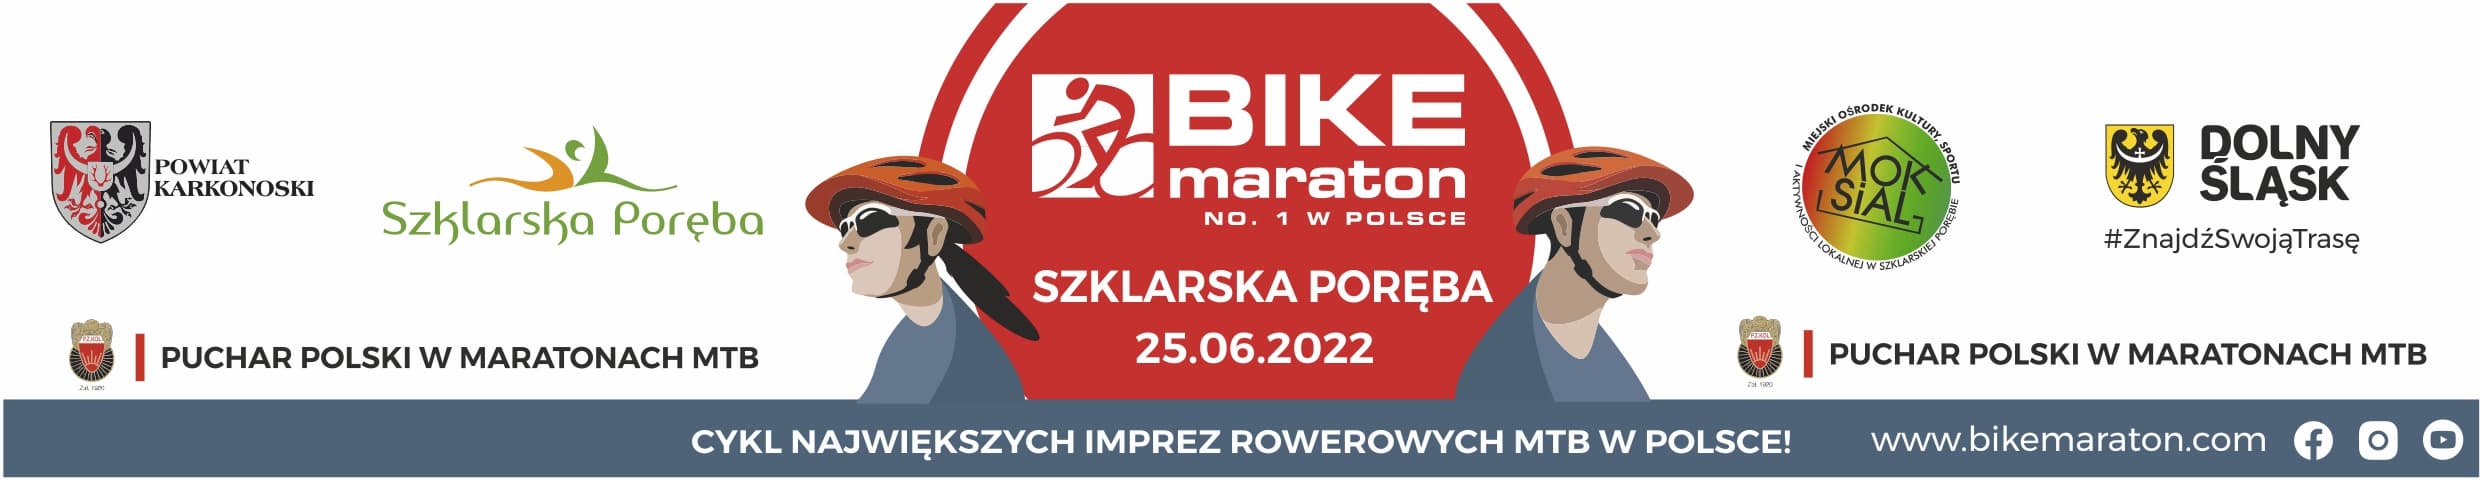 Bike Maraton i Puchar Polski XCM w Szklarskiej Porębie